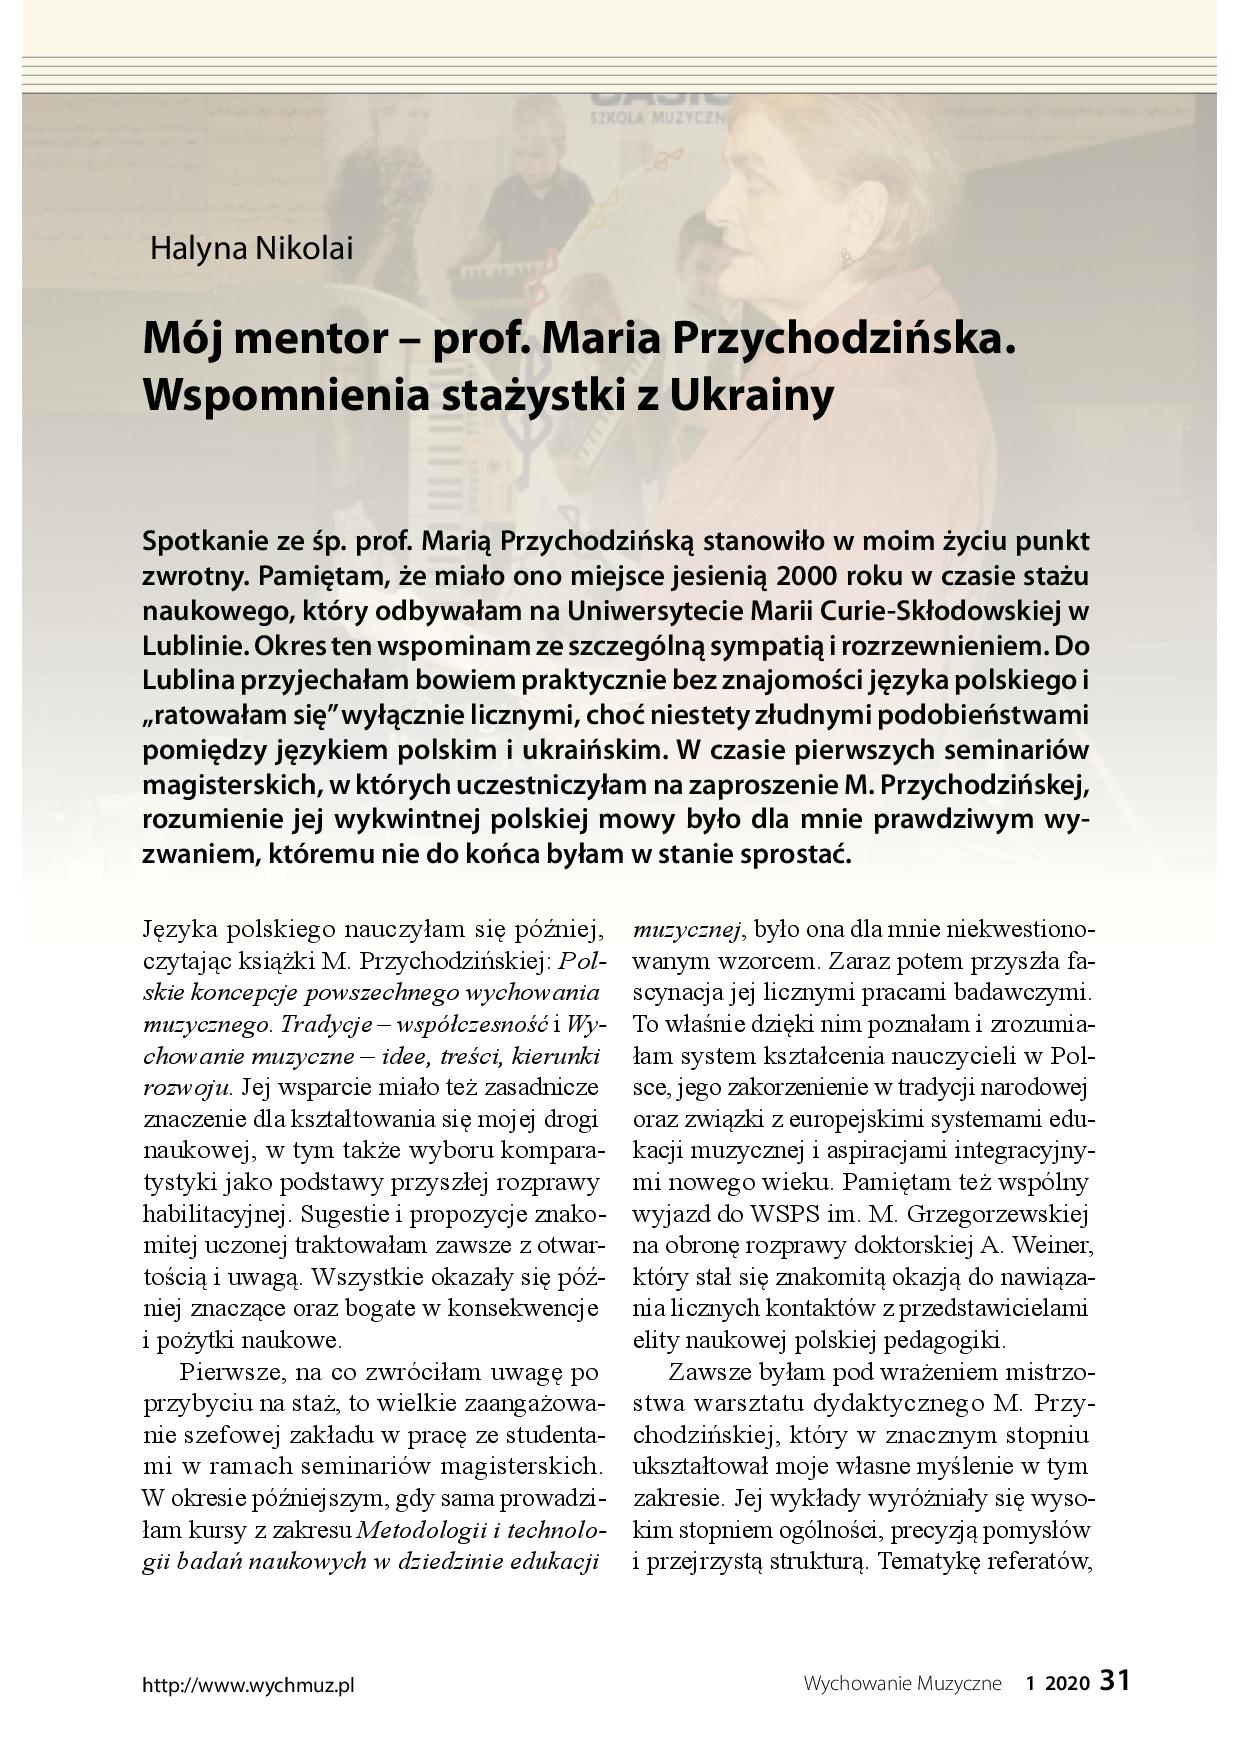 Mój mentor – prof. Maria Przychodzińska. Wspomnienia stażystki z Ukrainy